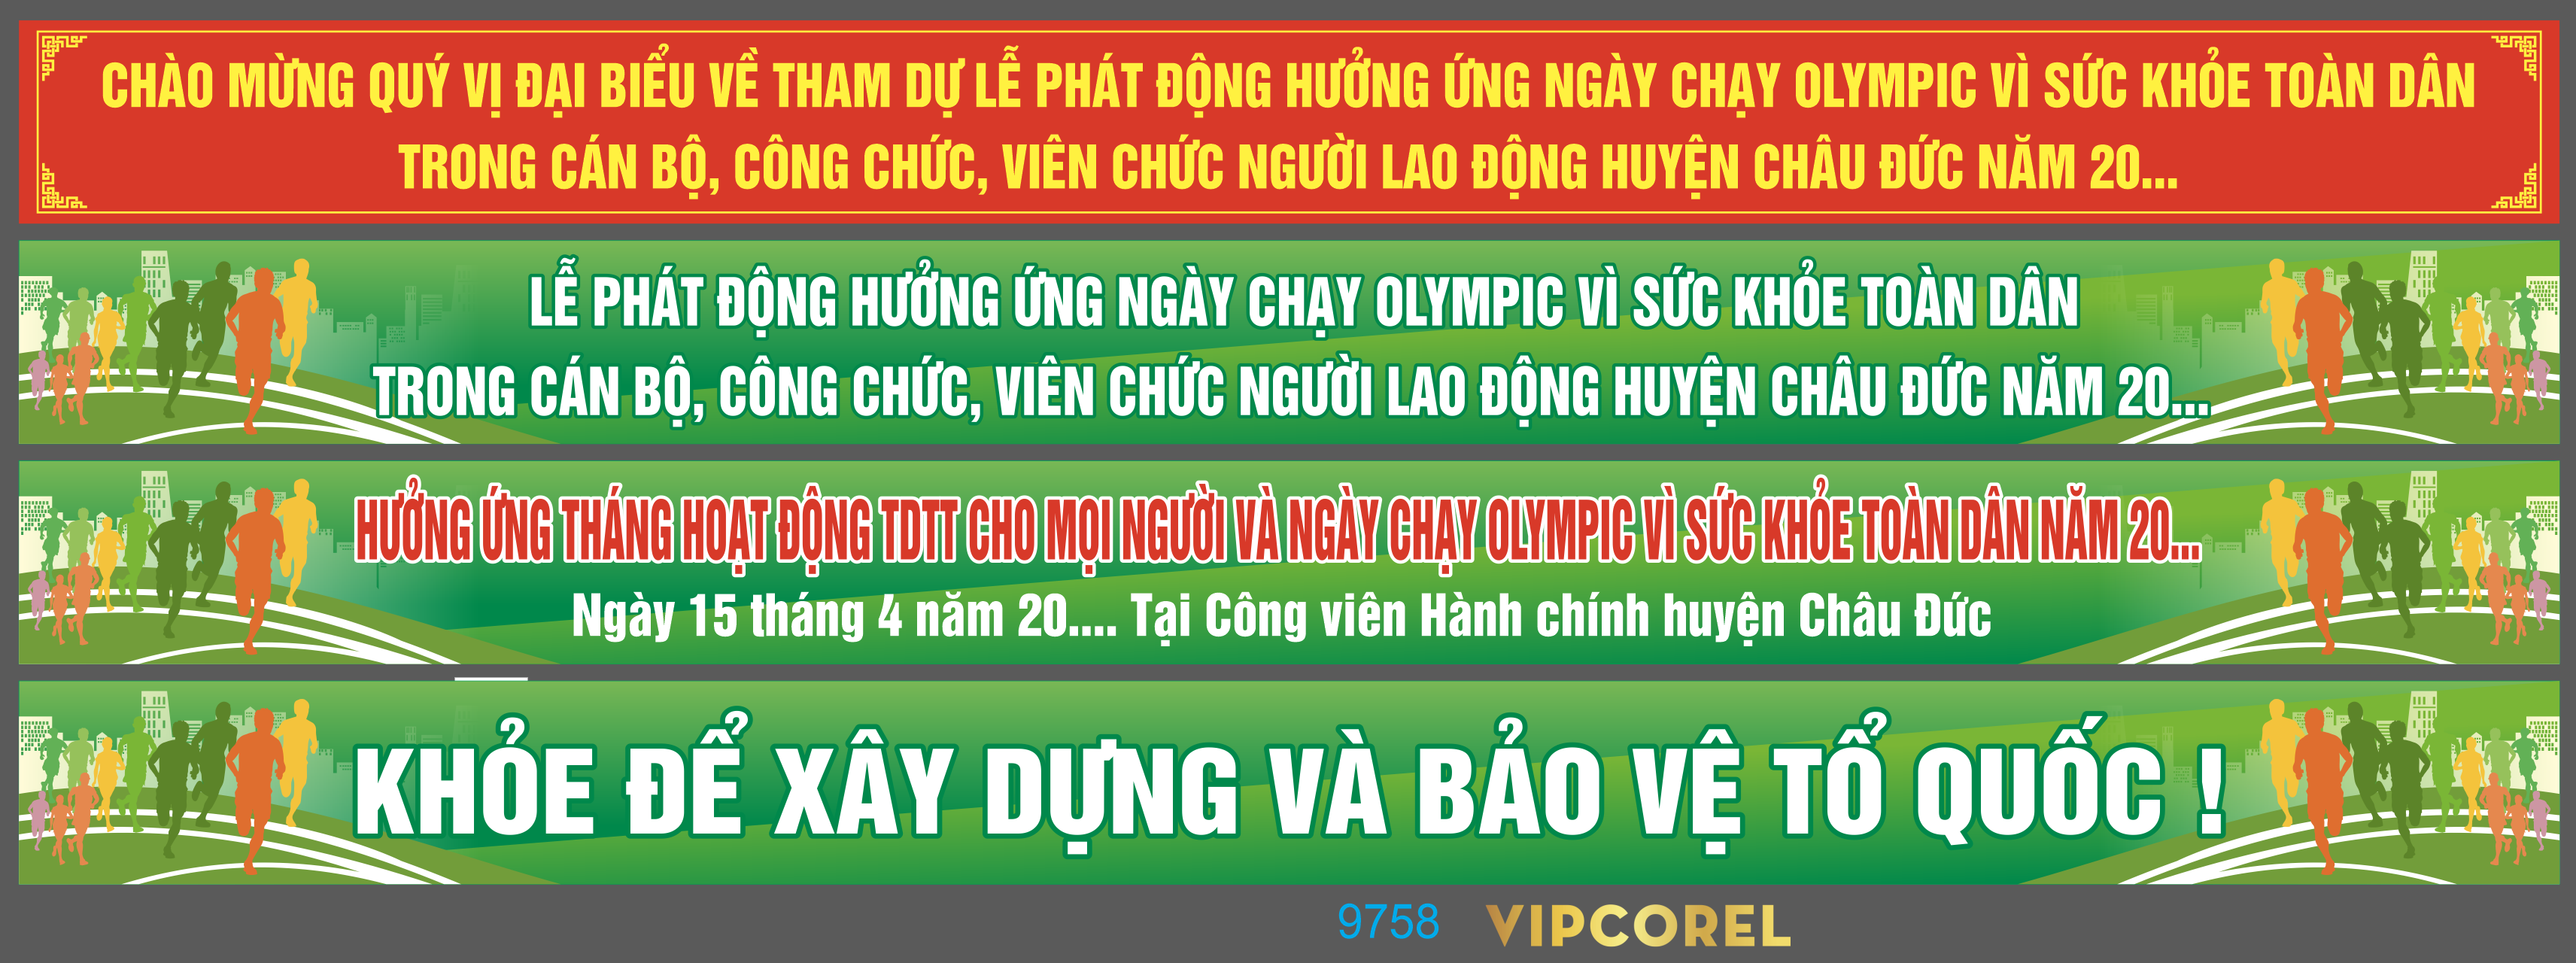 bang ron le phat dong huong ung ngay chay olympic.png